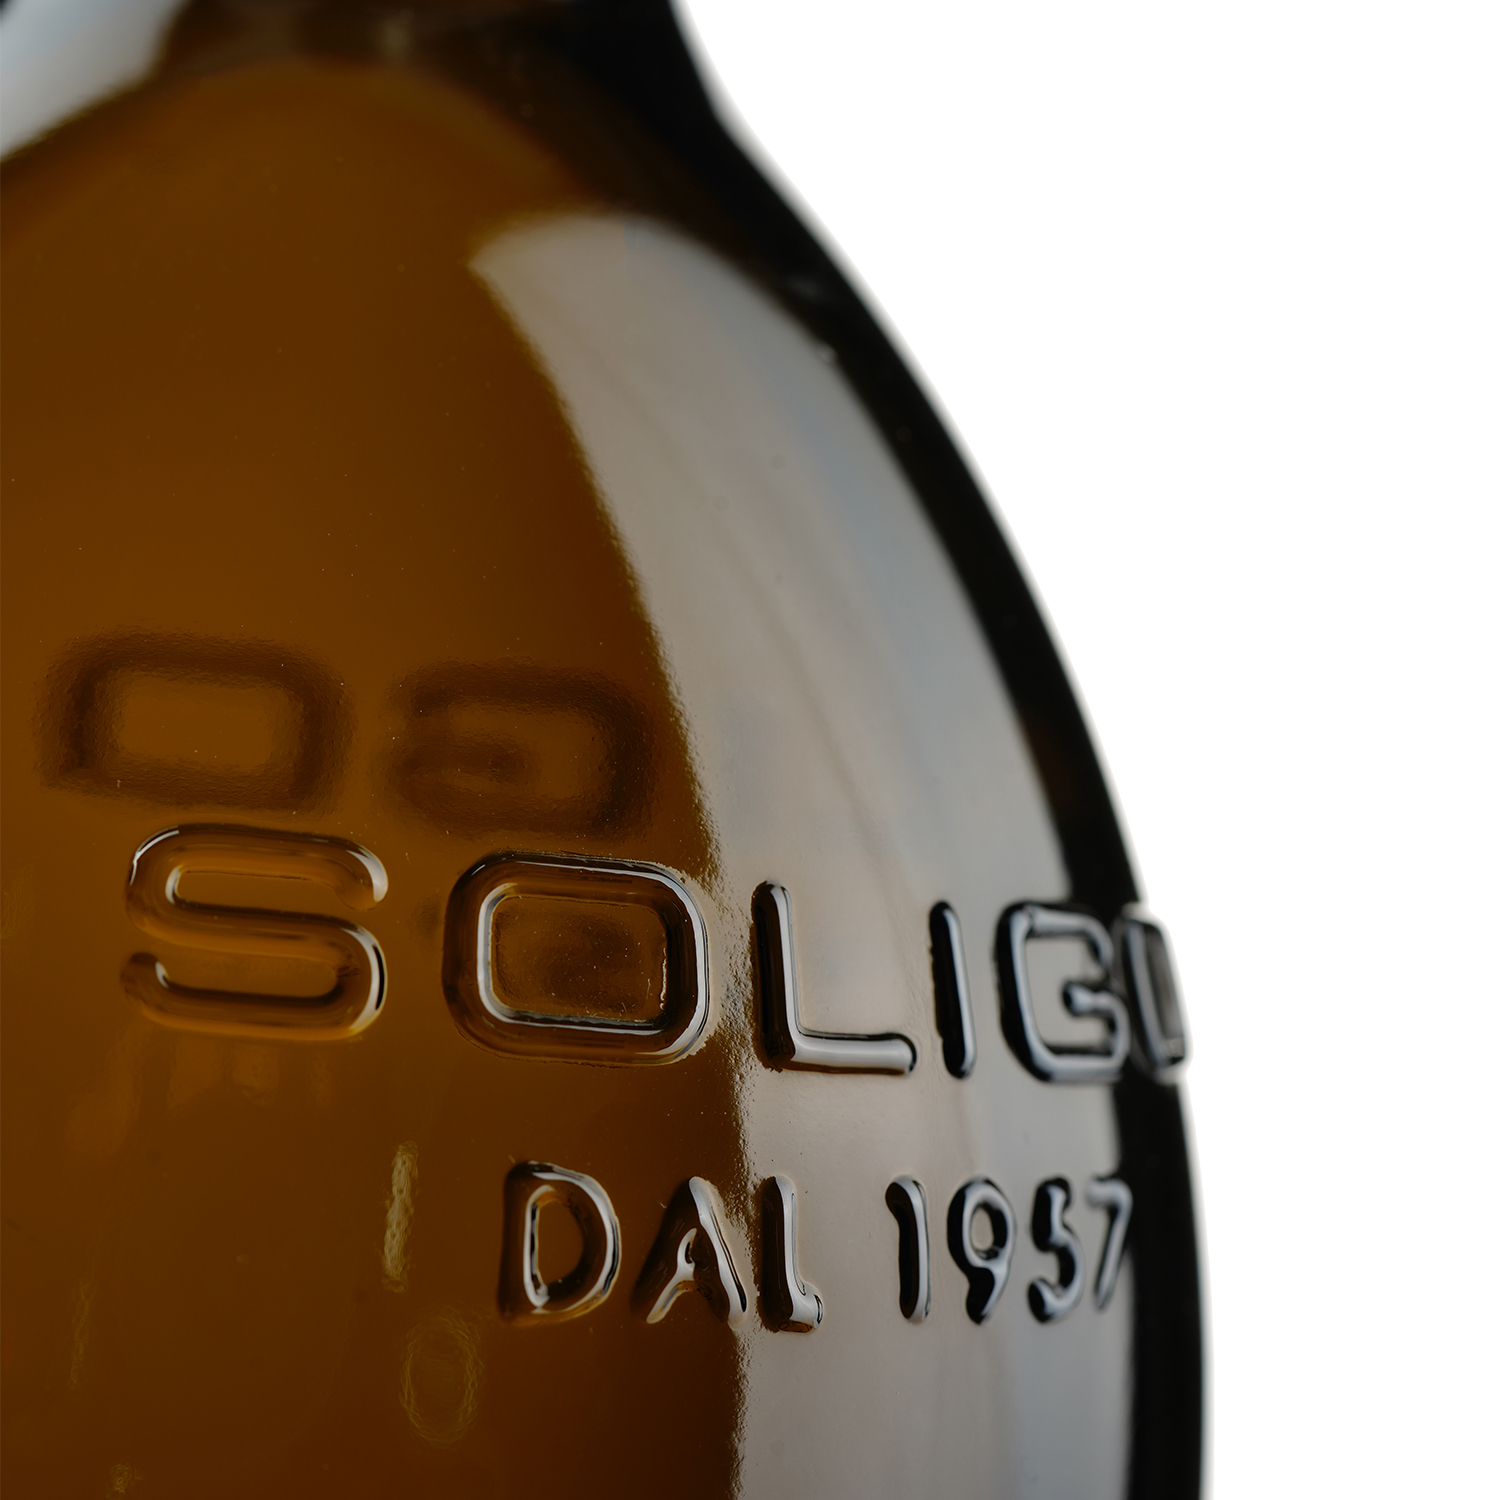 Ігристе вино Soligo Col de Mez Prosecco Valdobbiadene Brut, біле, брют, 11%, 1,5 л (53803) - фото 3